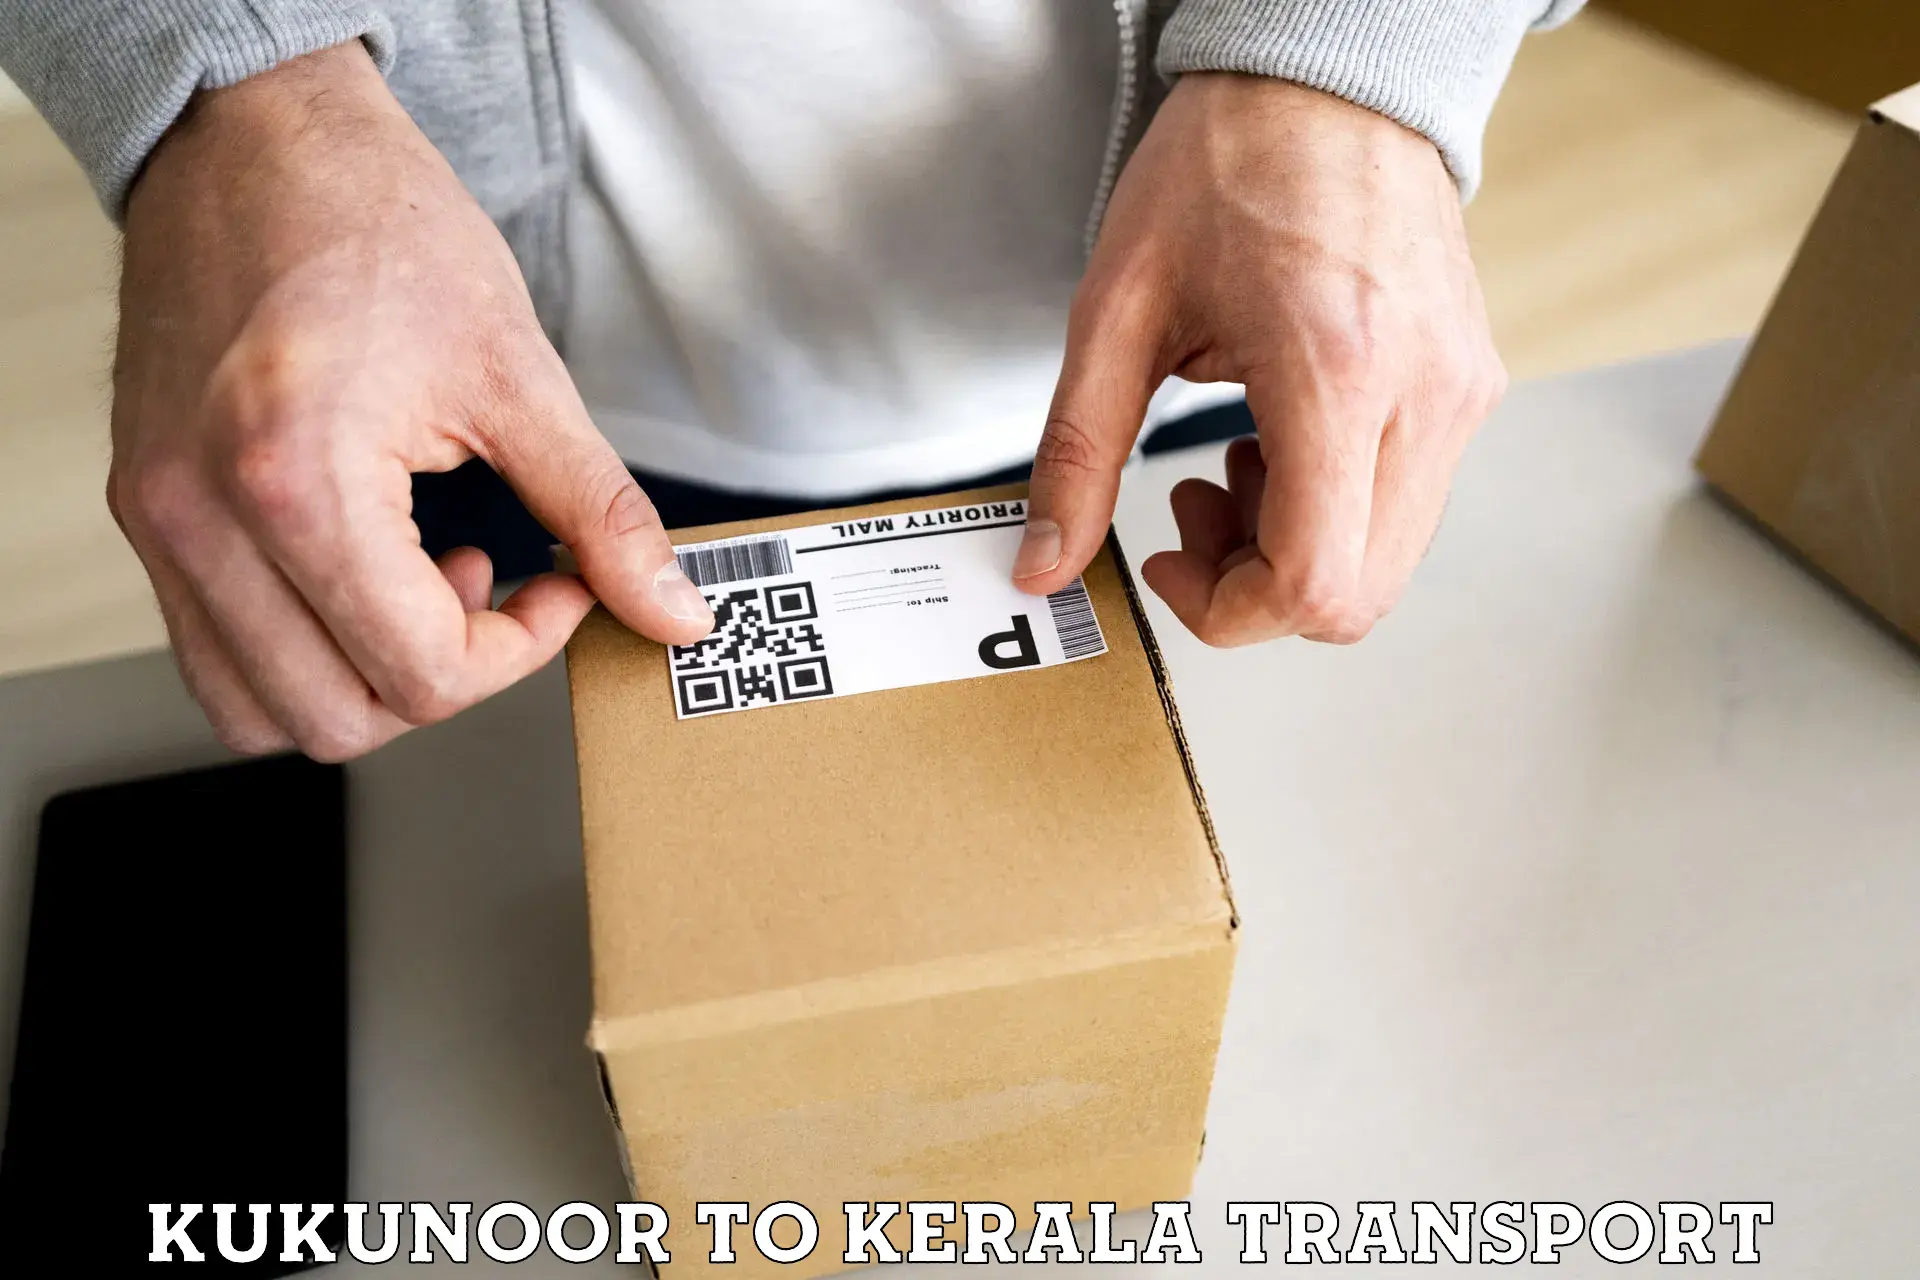 Goods transport services Kukunoor to Kerala